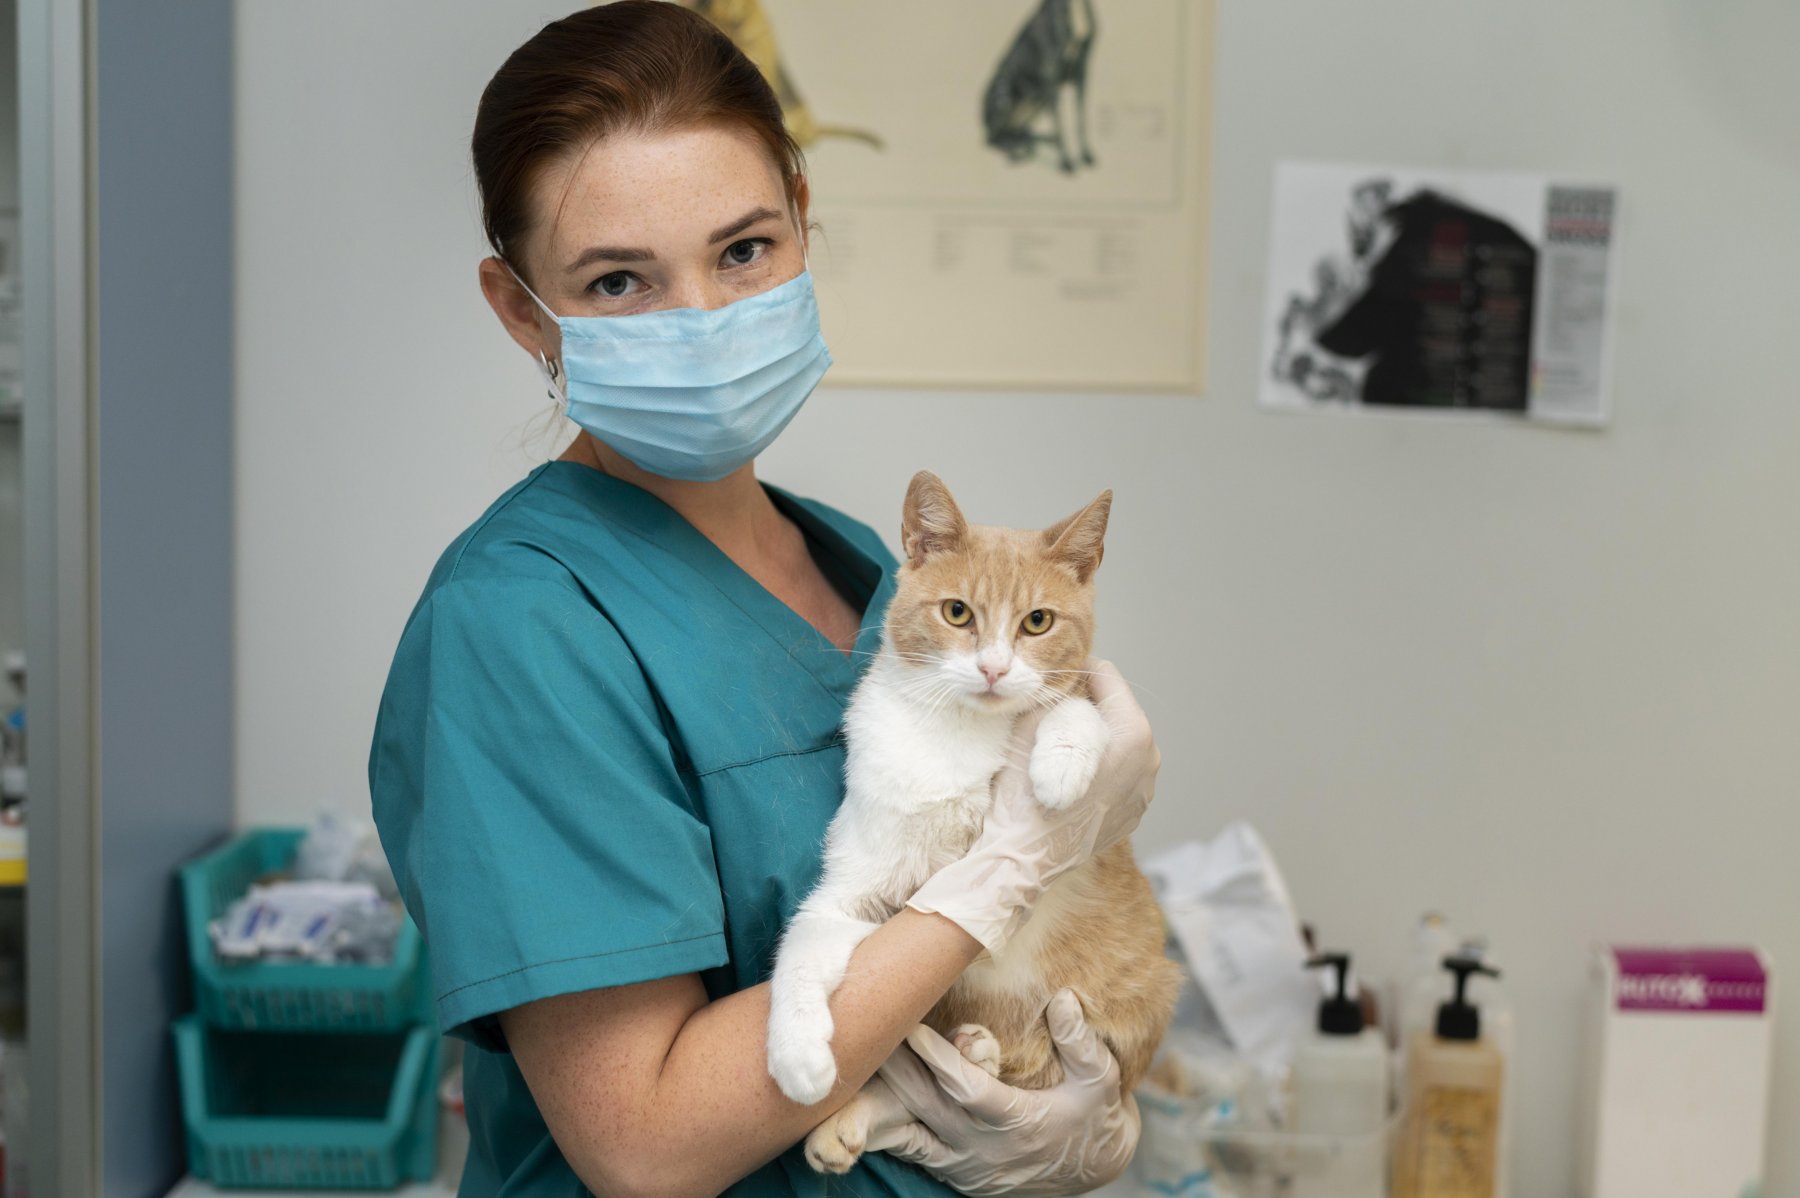 Лучших ветеринарных врачей определят в Москве